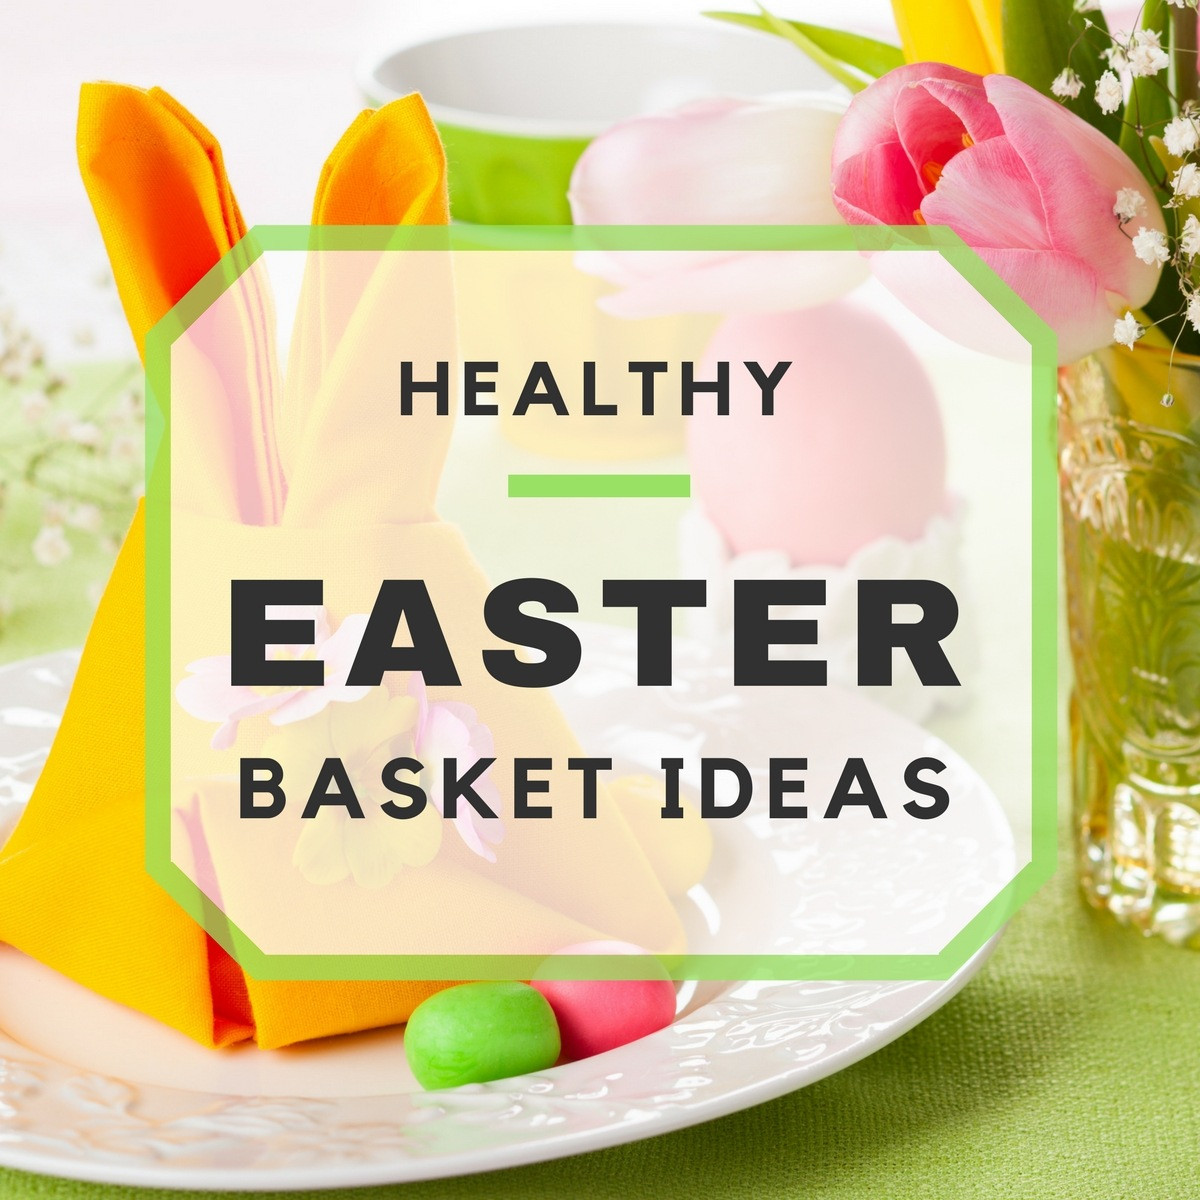 Non Candy Easter Basket Ideas
 Healthy Non Candy Easter Basket Ideas